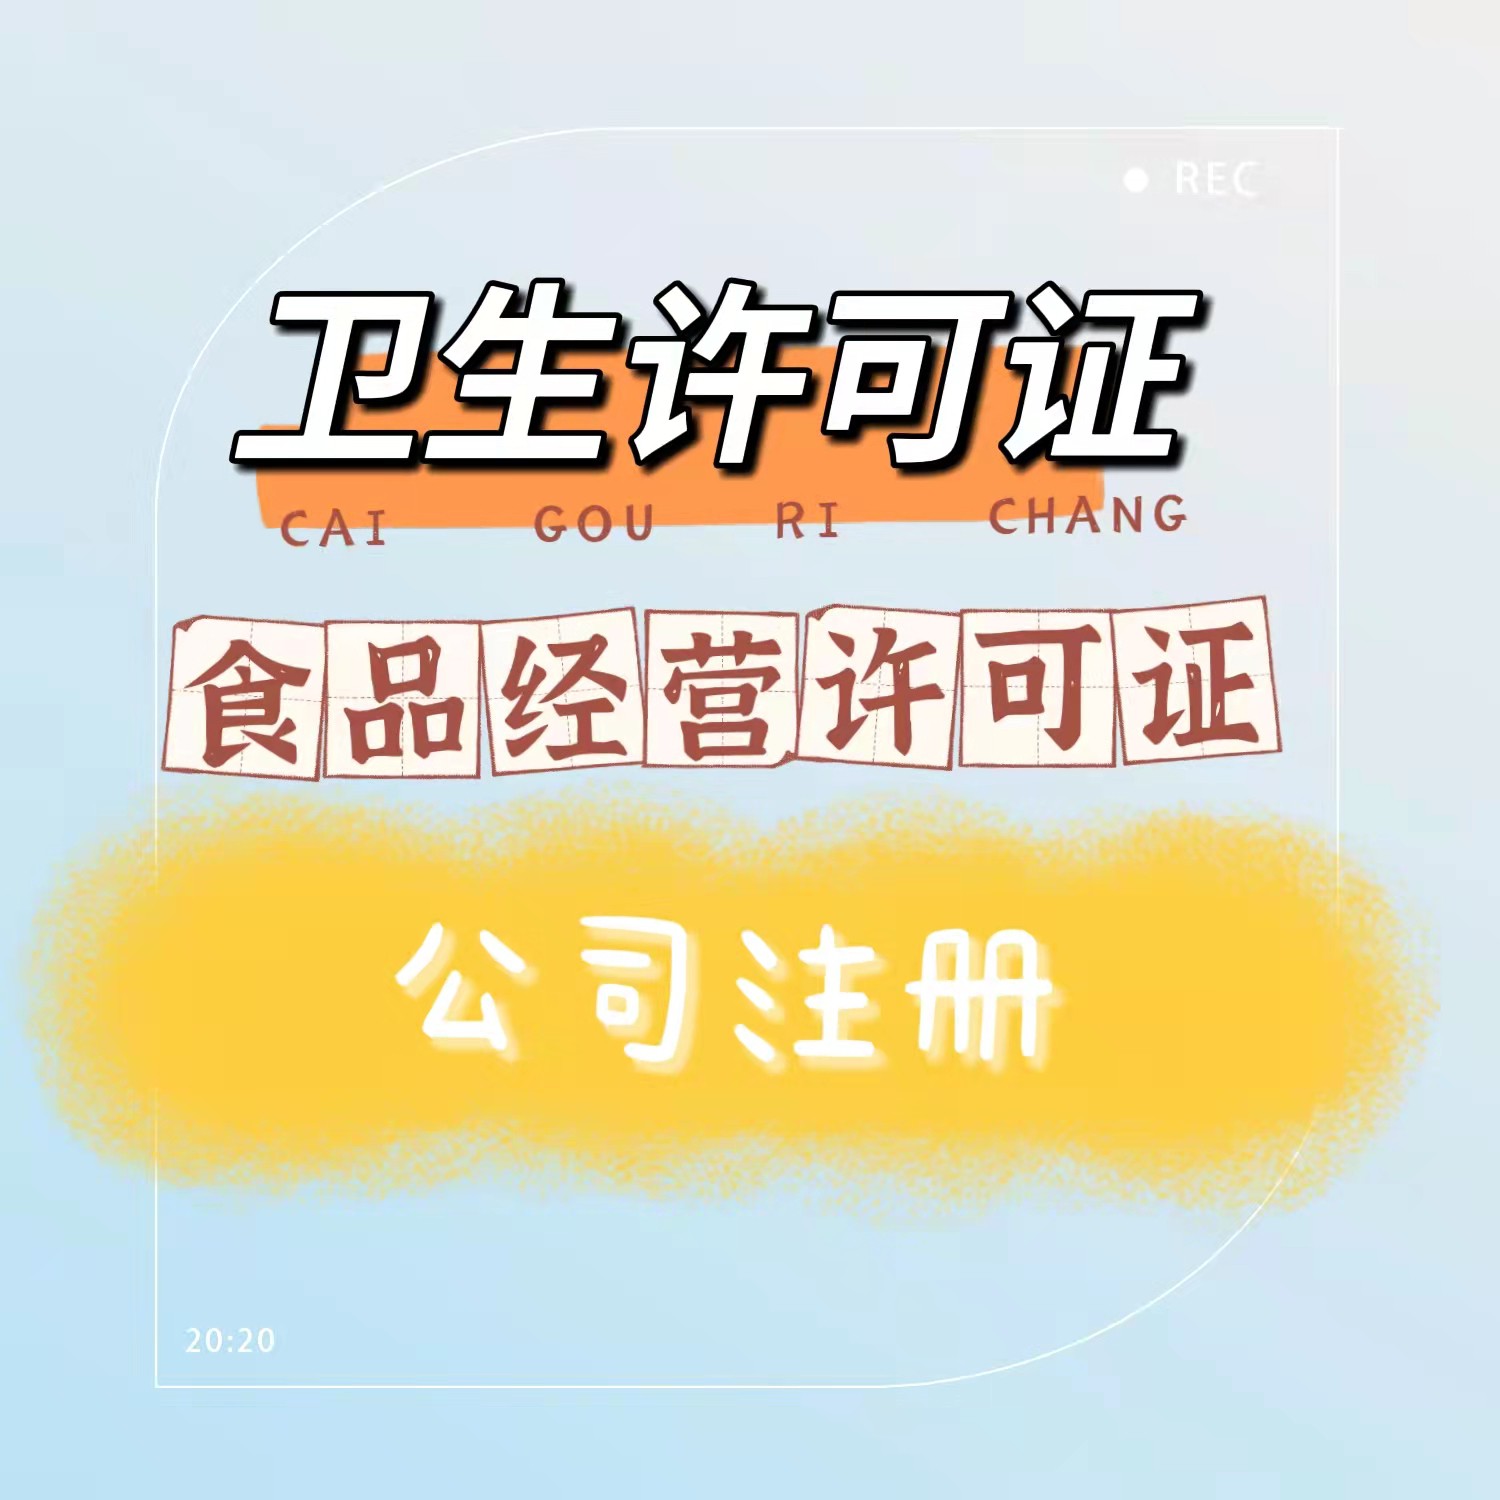 要求*办理烧烤便利店排水许可证北京大兴区